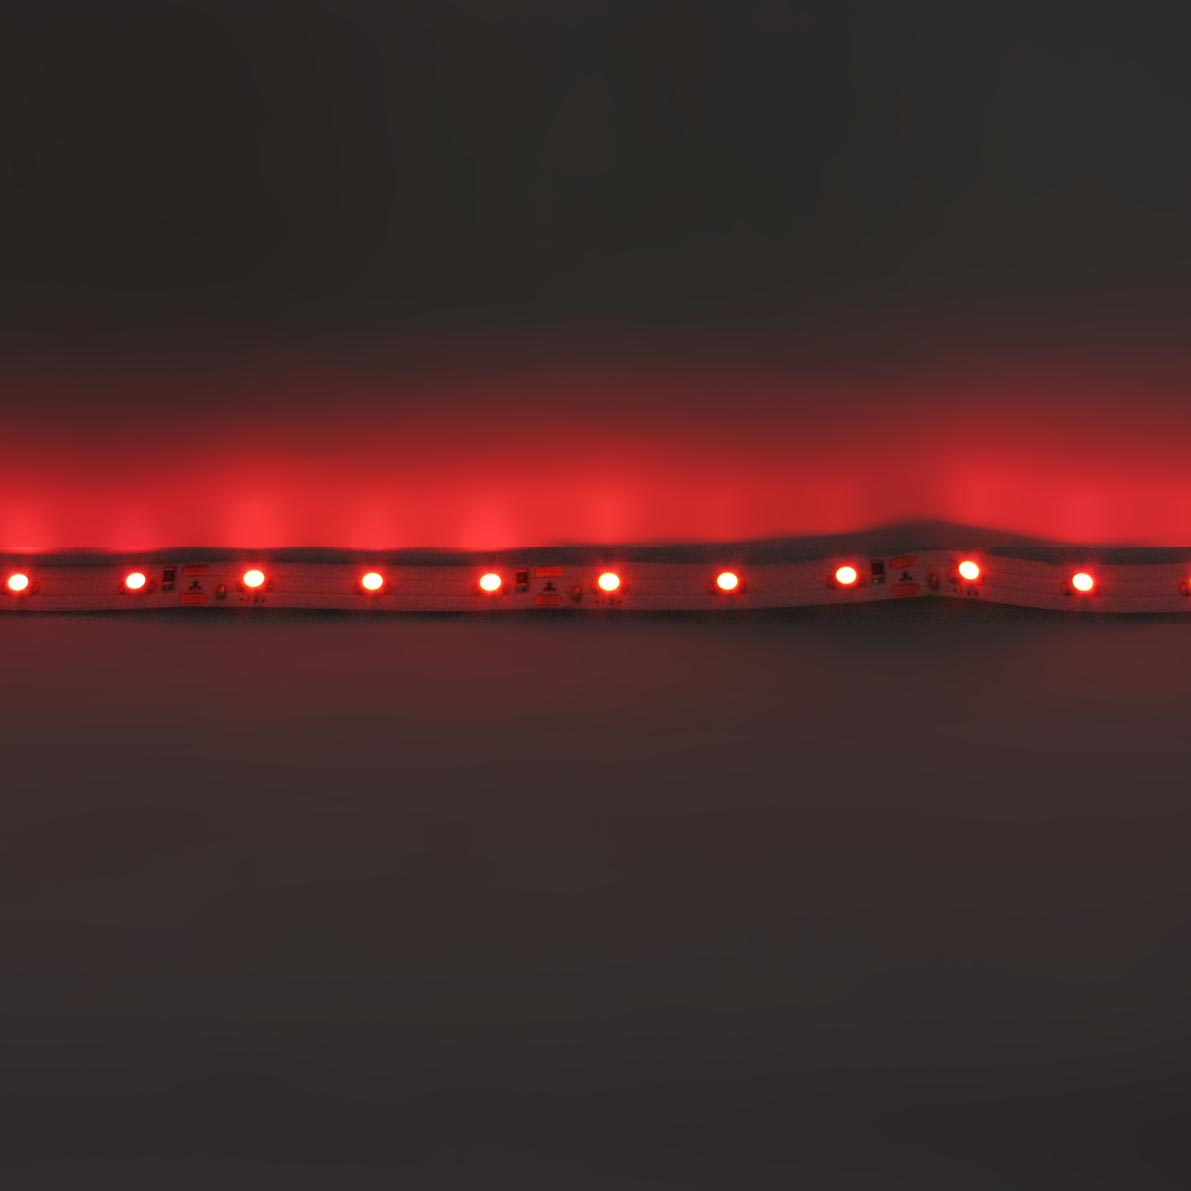 светодиодная лента standart class, 3528, 60led/m, red, 12v, ip33, артикул 52709